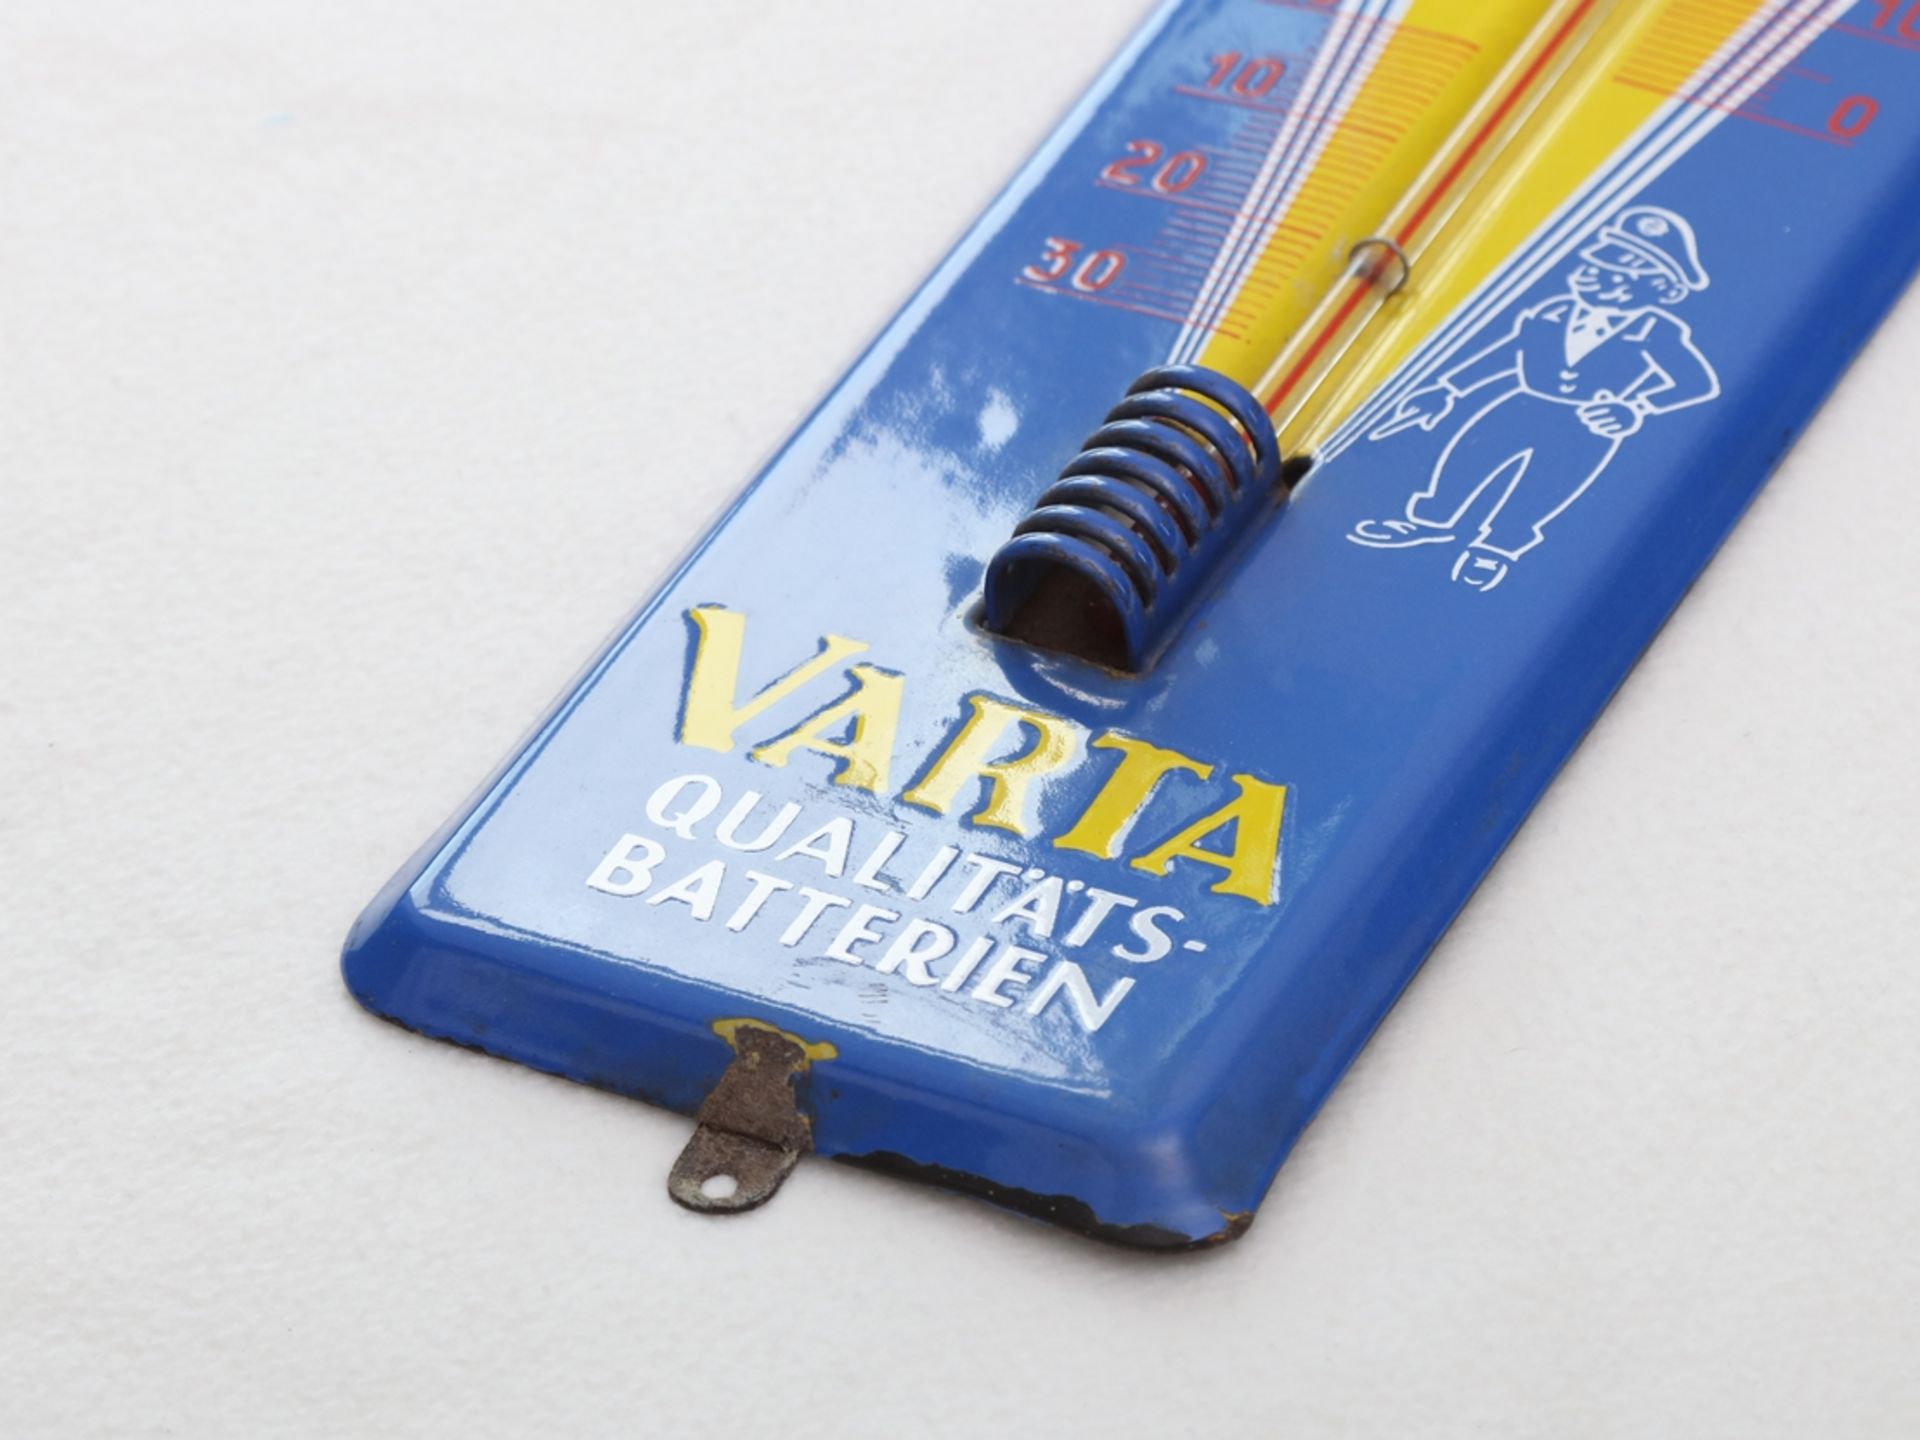 Emailschild Thermometer Varta Batterien, Hagen-Wehringhausen, um 1960 - Bild 3 aus 7